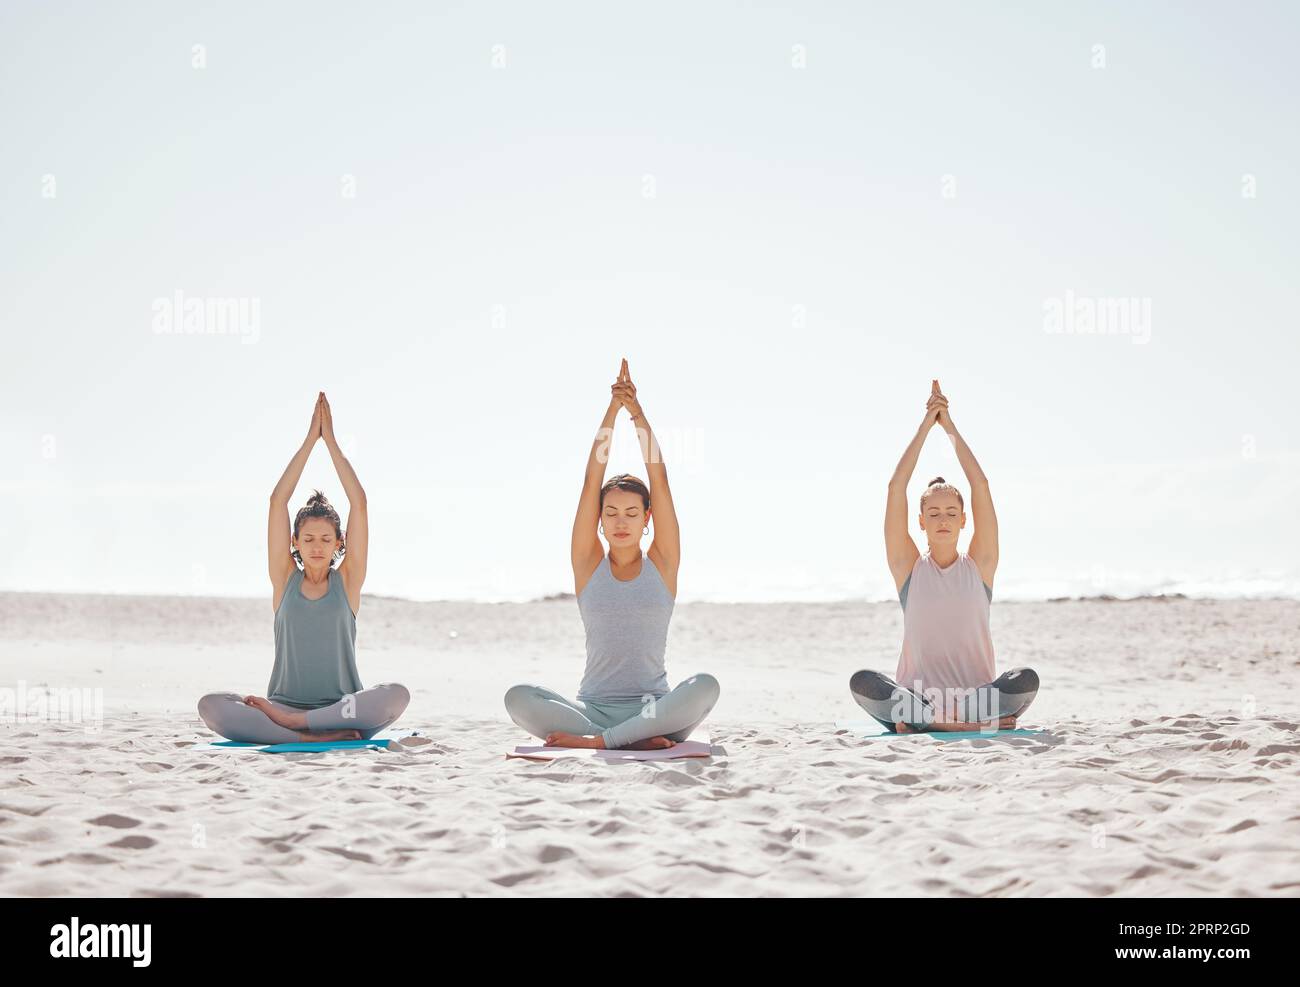 Zen, méditation et yoga à la plage avec des femmes pour le bien-être, la forme physique et la santé. Étirements, lotus pose et amis faisant un entraînement ou un exercice pilates pour la mobilité, la flexibilité ou la pleine conscience. Banque D'Images